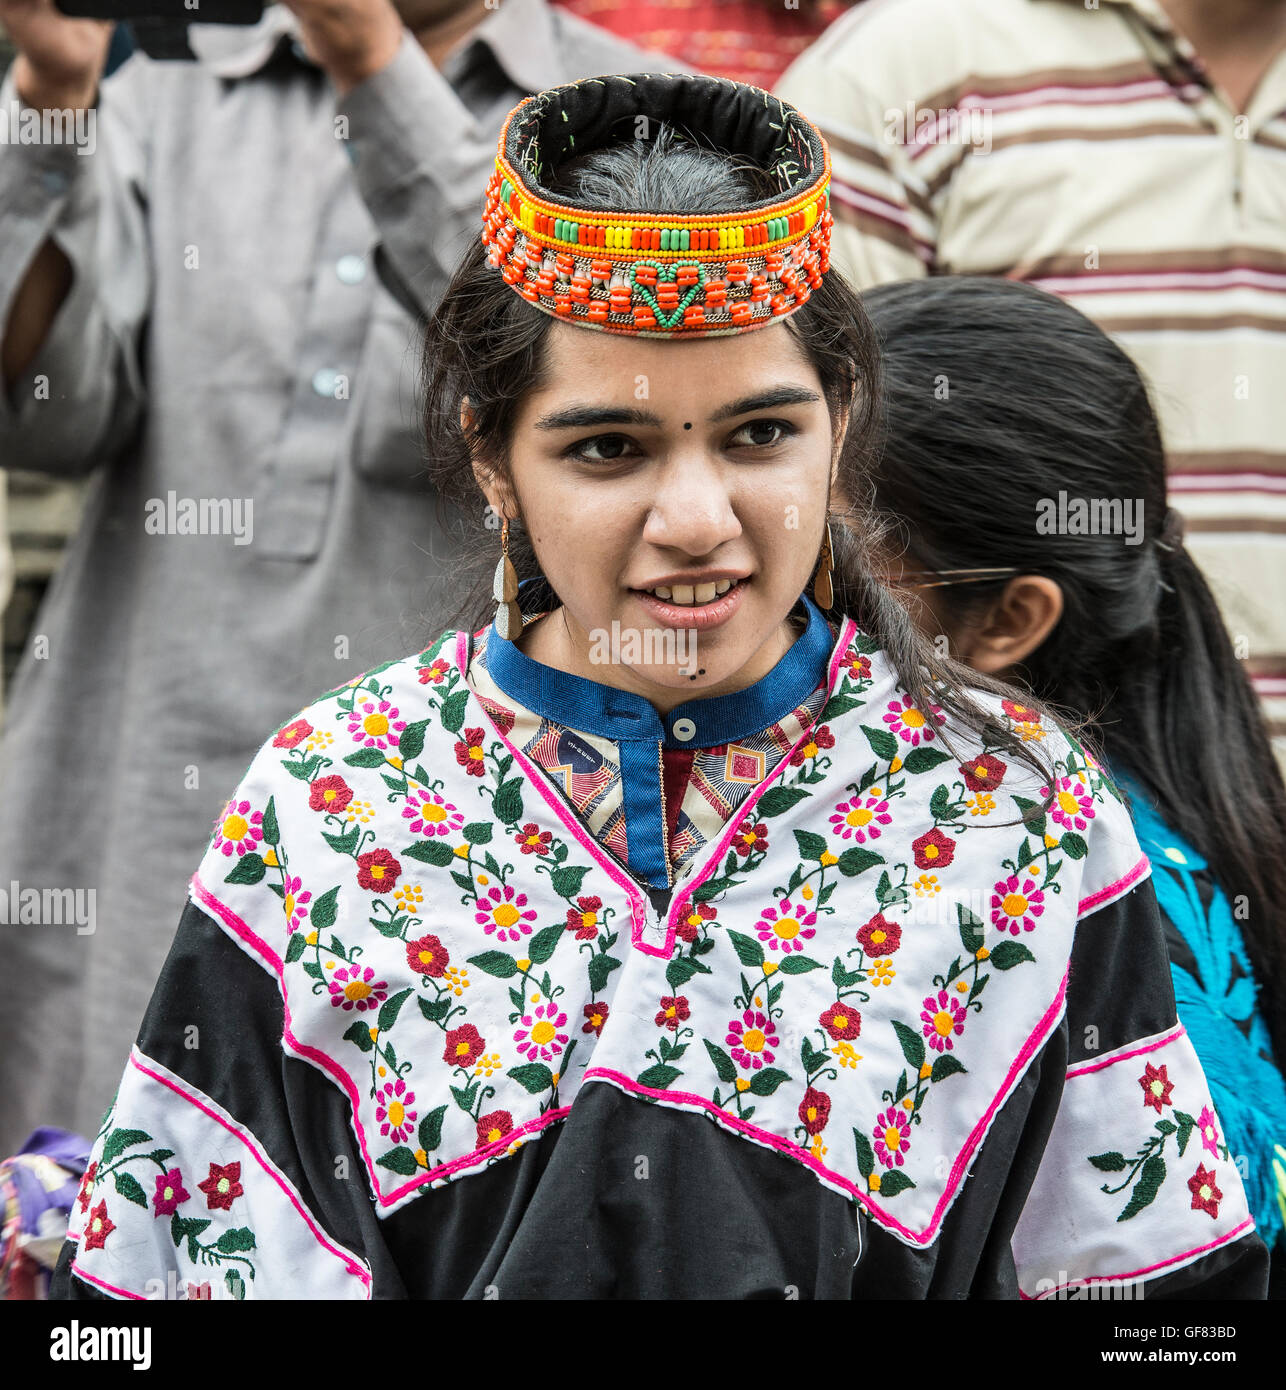 Pakistani woman wearing a traditional in a Kalash dress and headdress Stock Photo